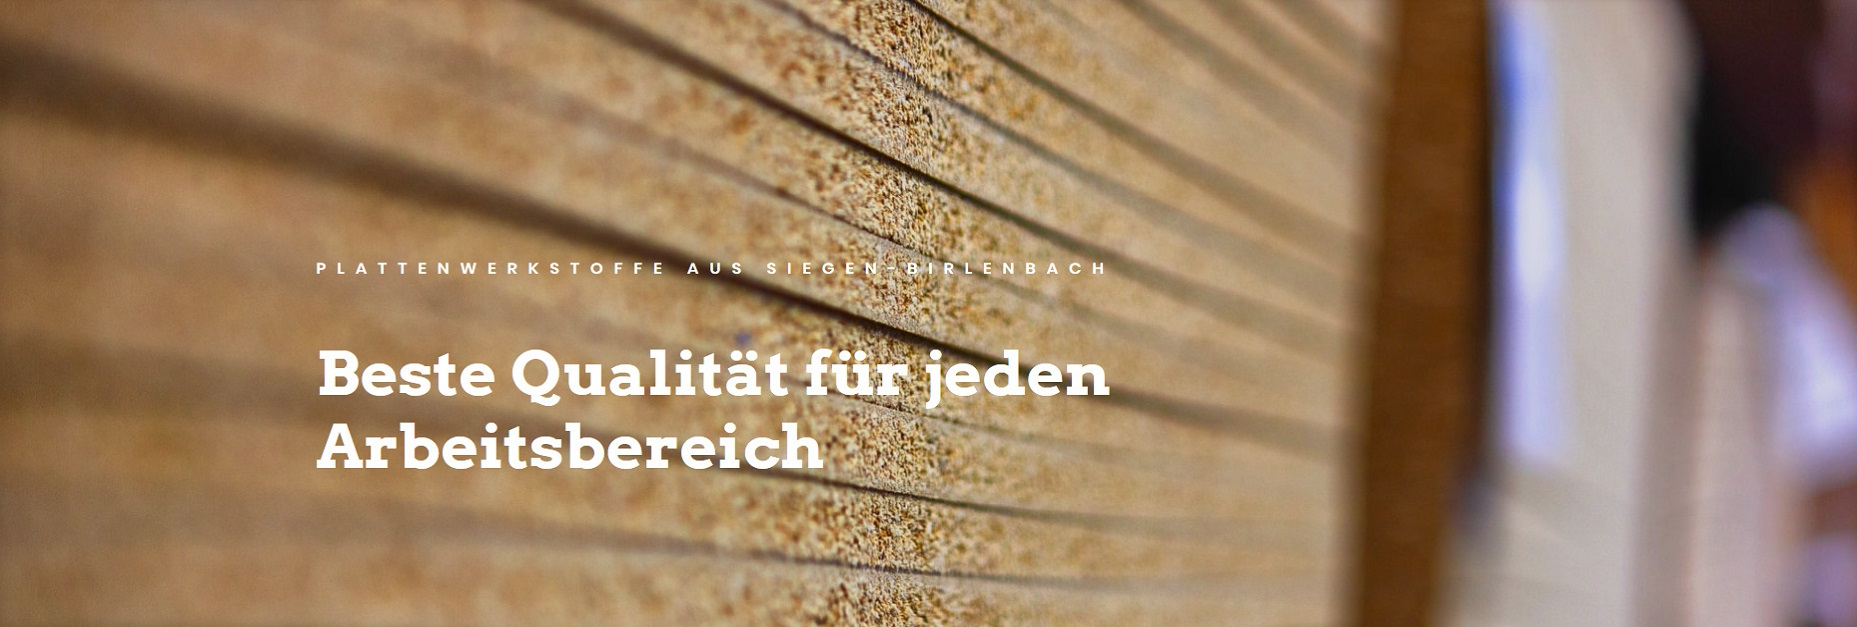 Screenshot_2020-04-06 Przise verarbeitete Plattenwerkstoffe  Holz Mnker Siegen-Birlenbach.jpg